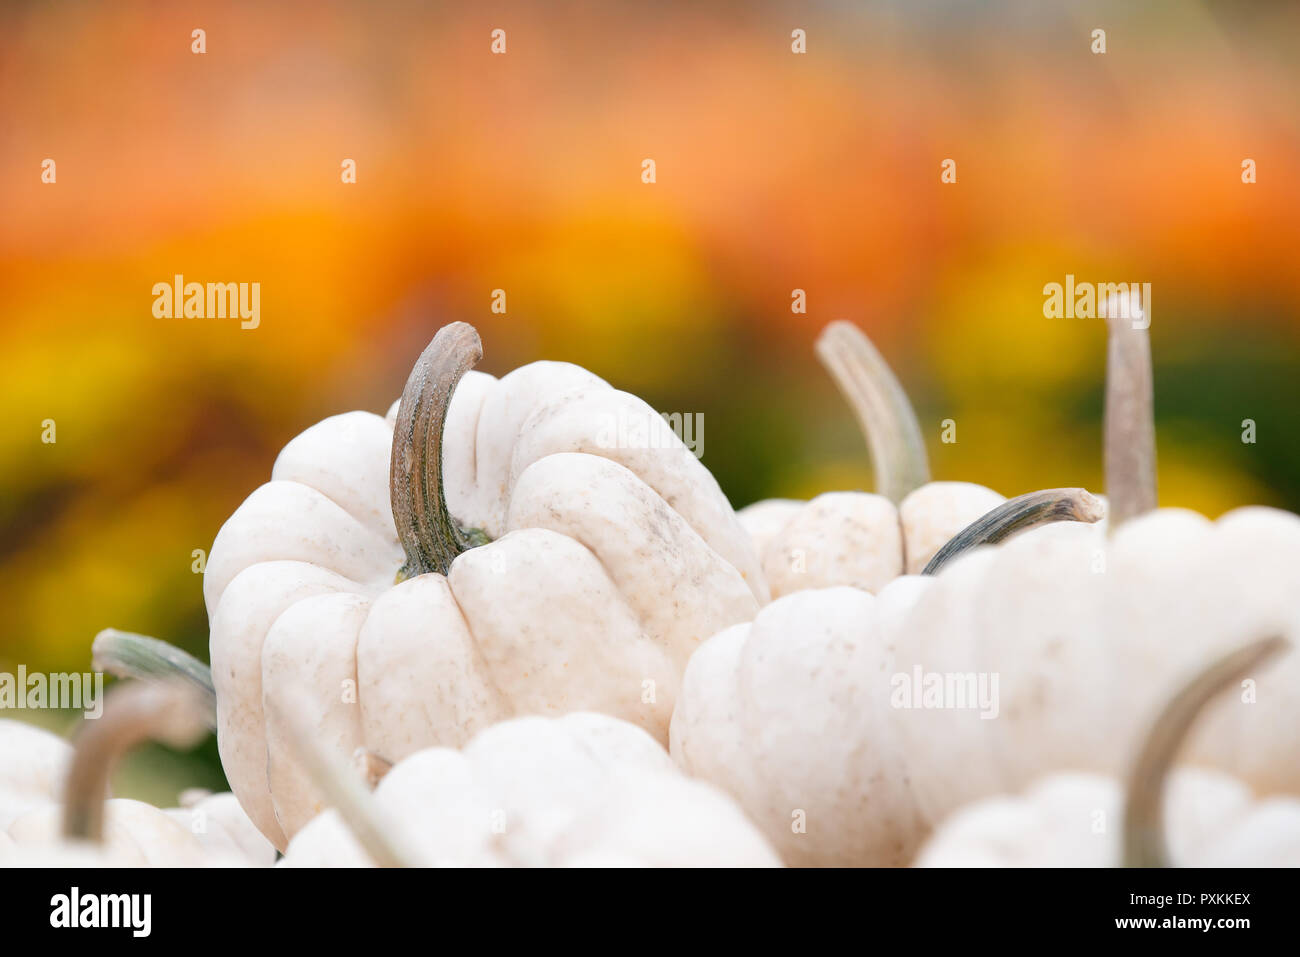 Closeup of white mini pumpkins against autumn colors. Copy space. Stock Photo